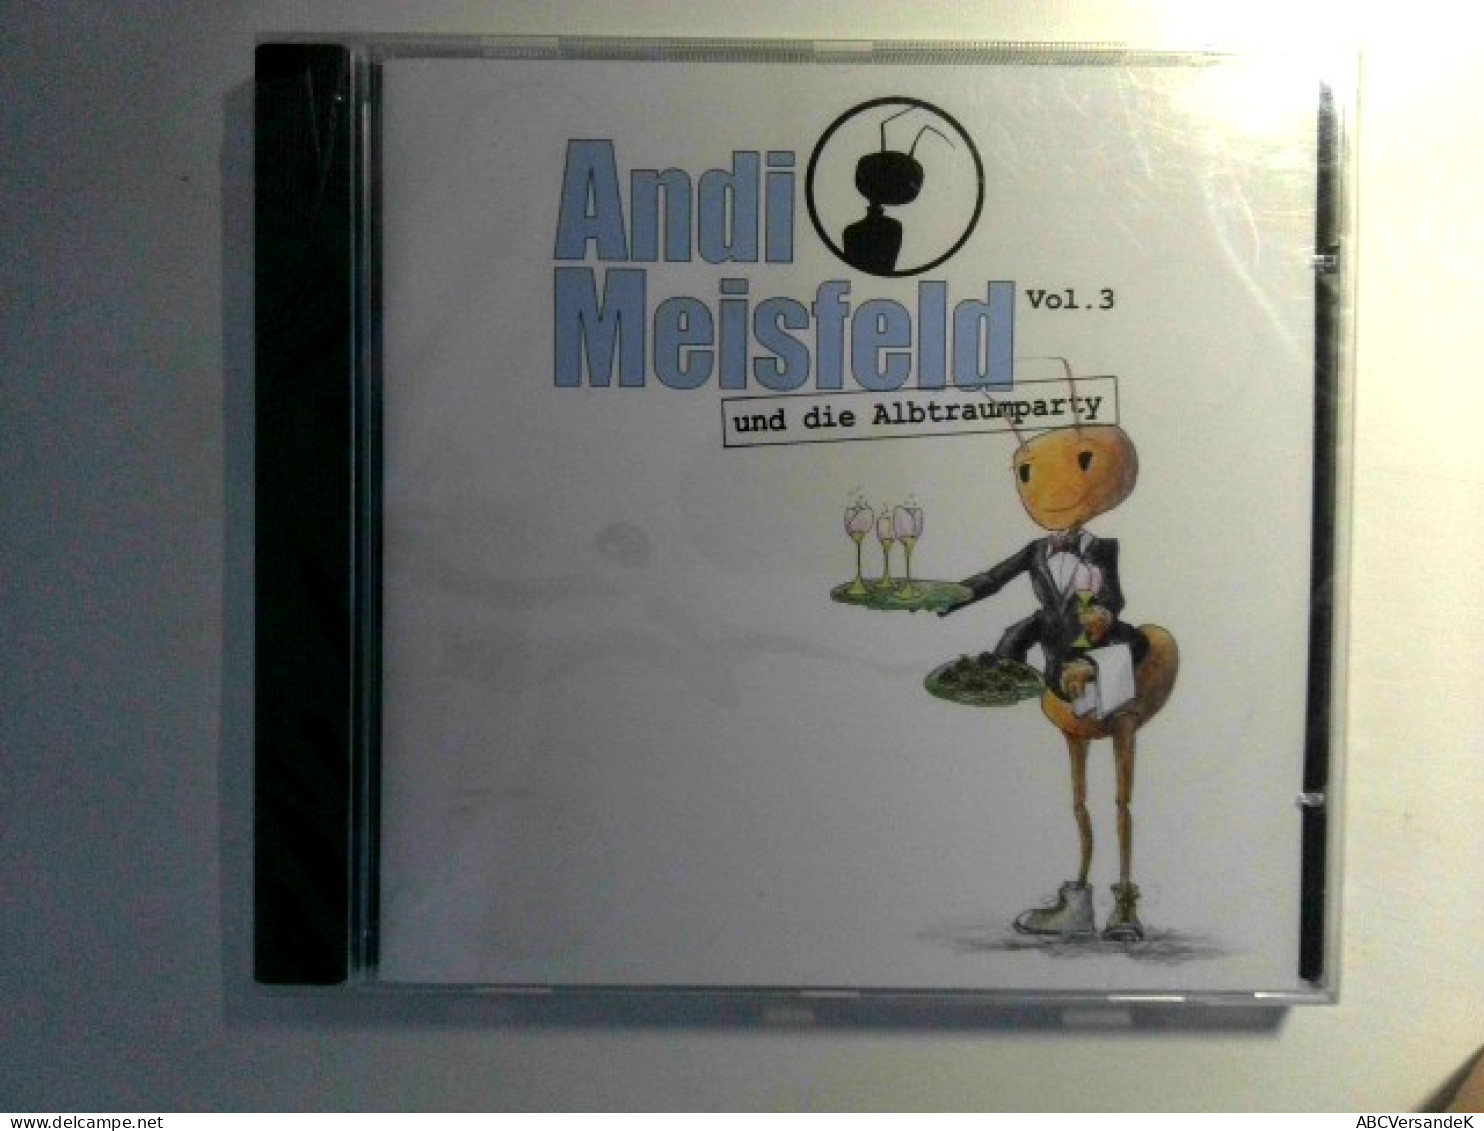 Andi Meisfeld 3 - Und Die Albtraumparty, - CDs